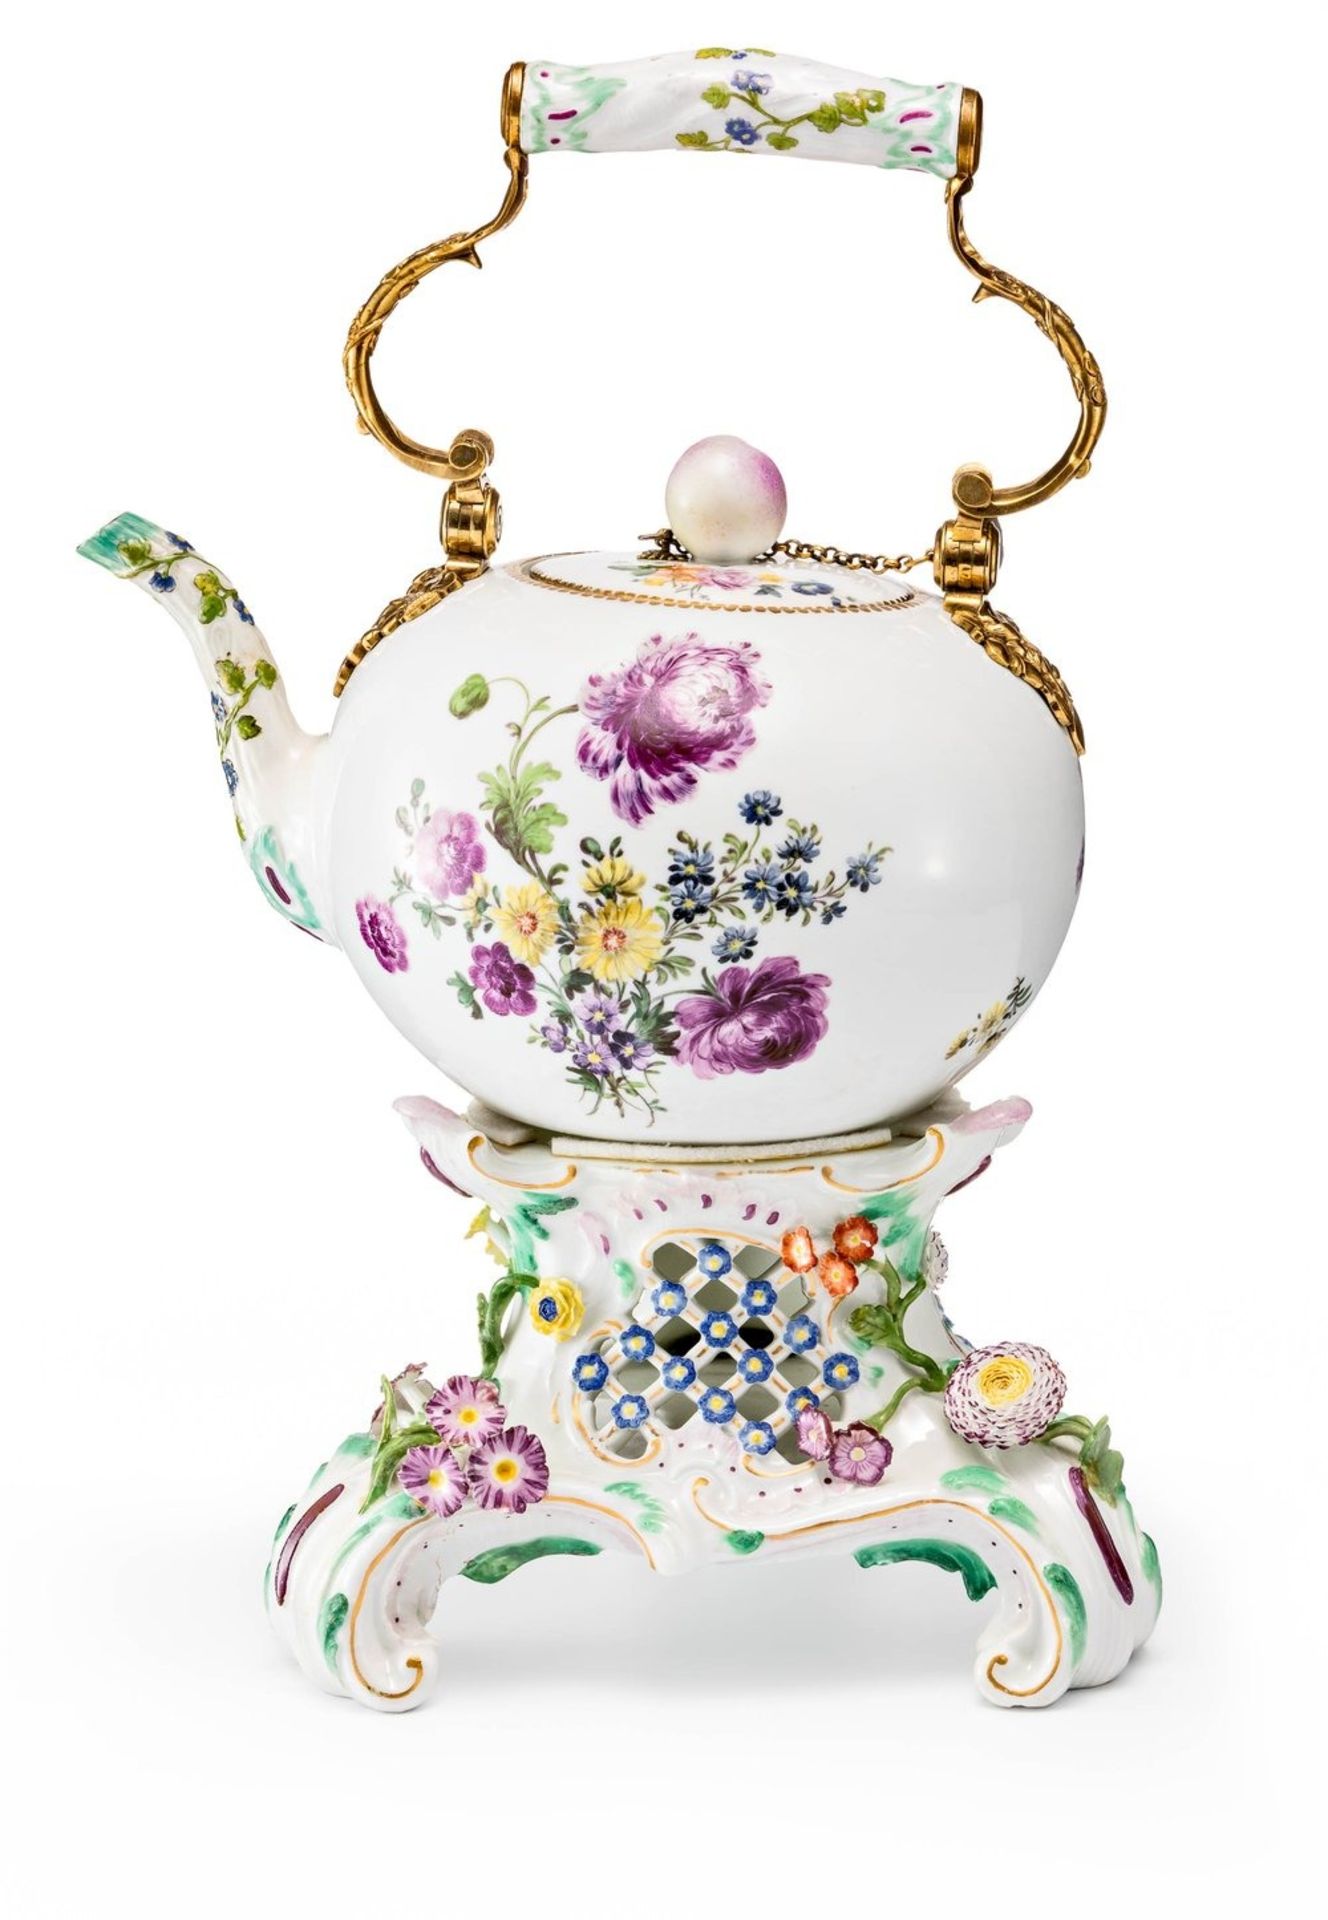 Grosse Teekanne mit natürlichen Blumen und Bronzemontierung auf Stövchen Meissen, um 1750/60, die Mo